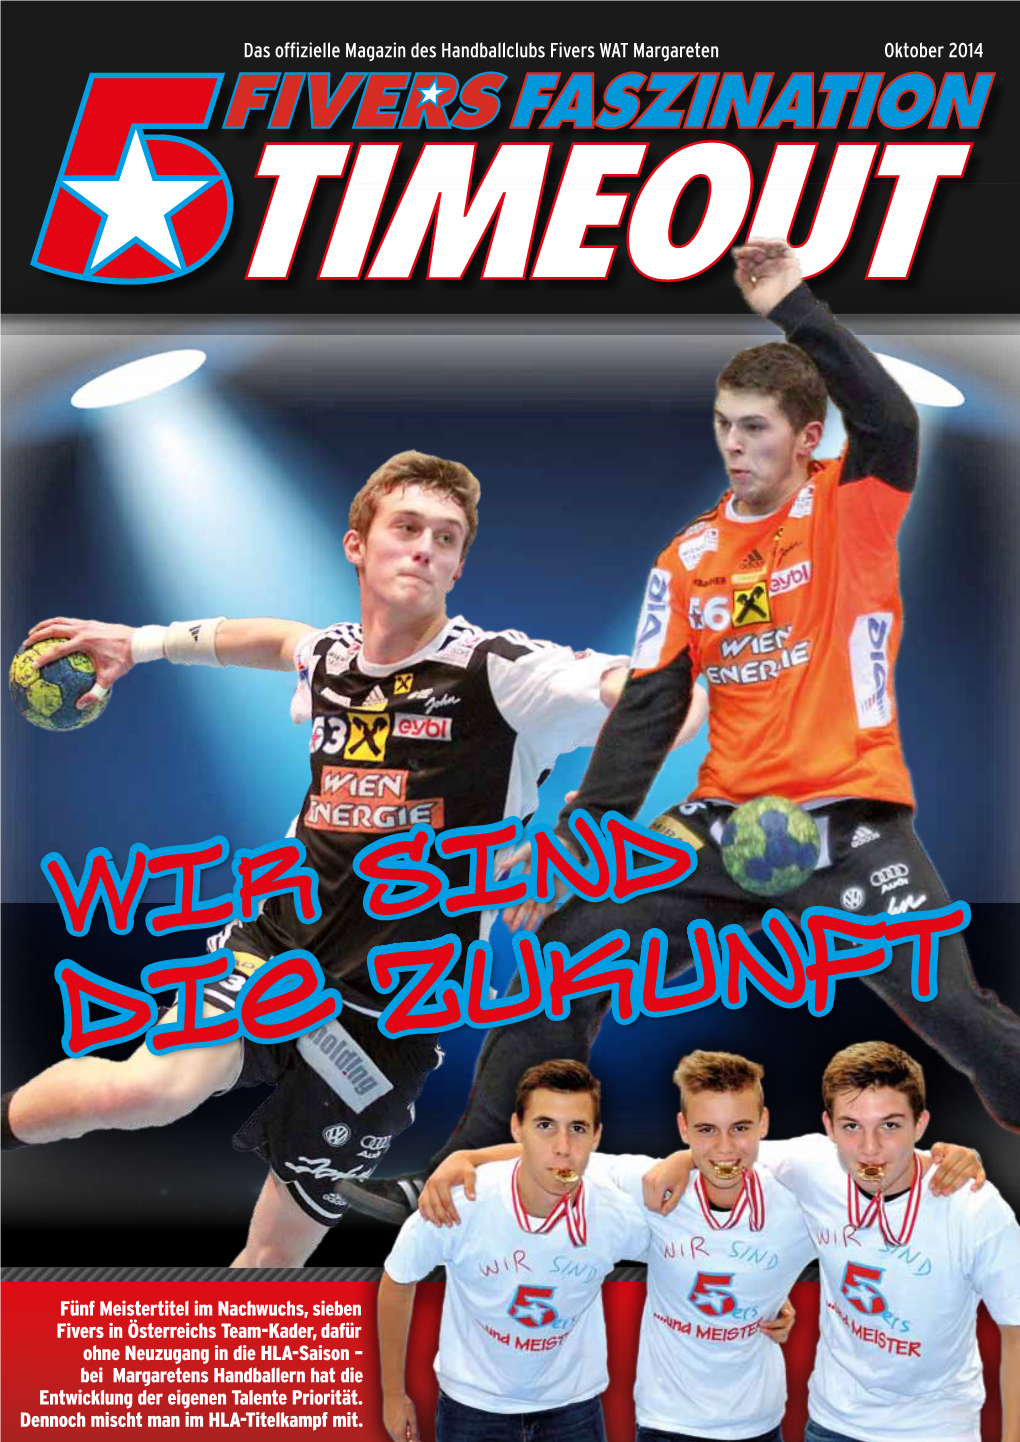 Das Offizielle Magazin Des Handballclubs Fivers WAT Margareten Oktober 2014